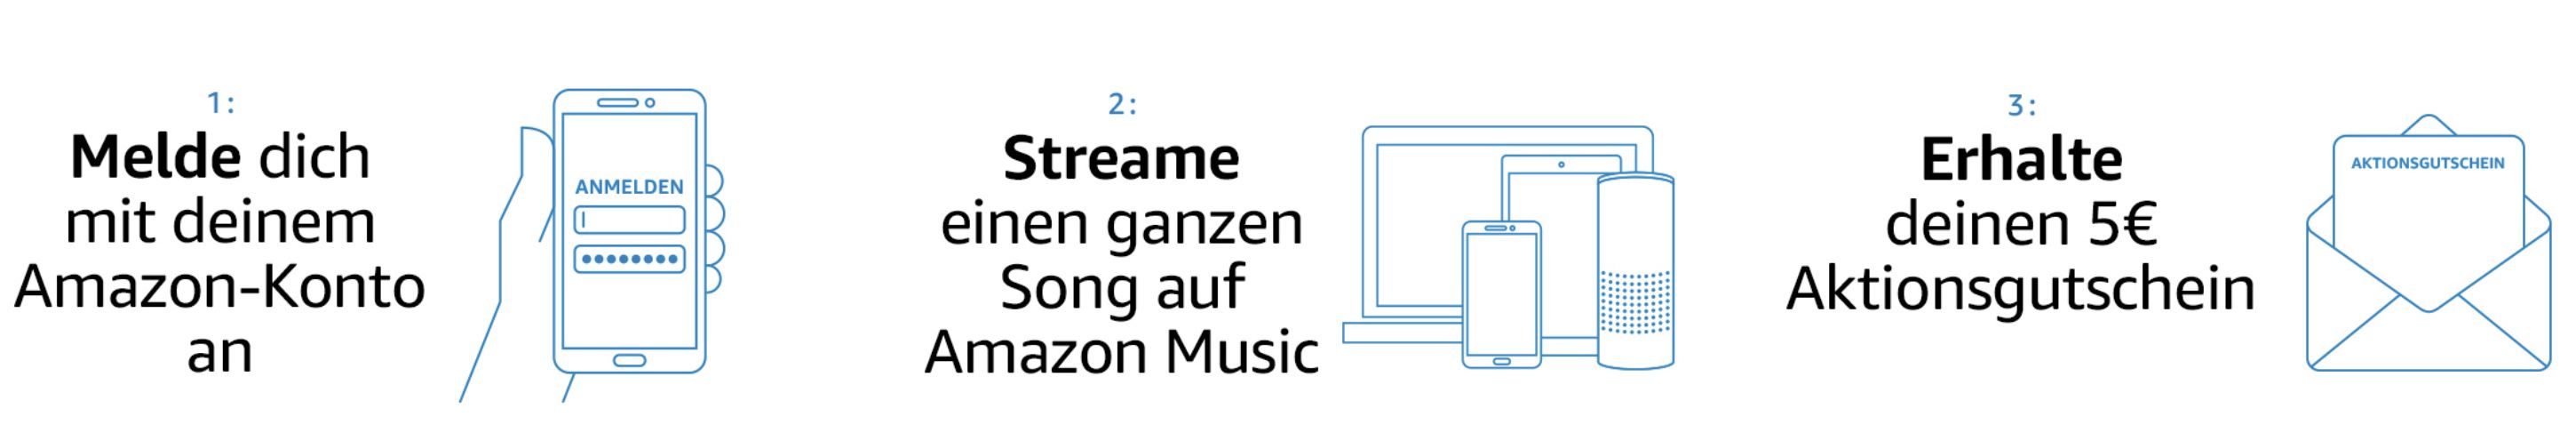 30 Sekunden (erstmalig) Amazon Prime Music streamen und 5€ Gutschein geschenkt bekommen